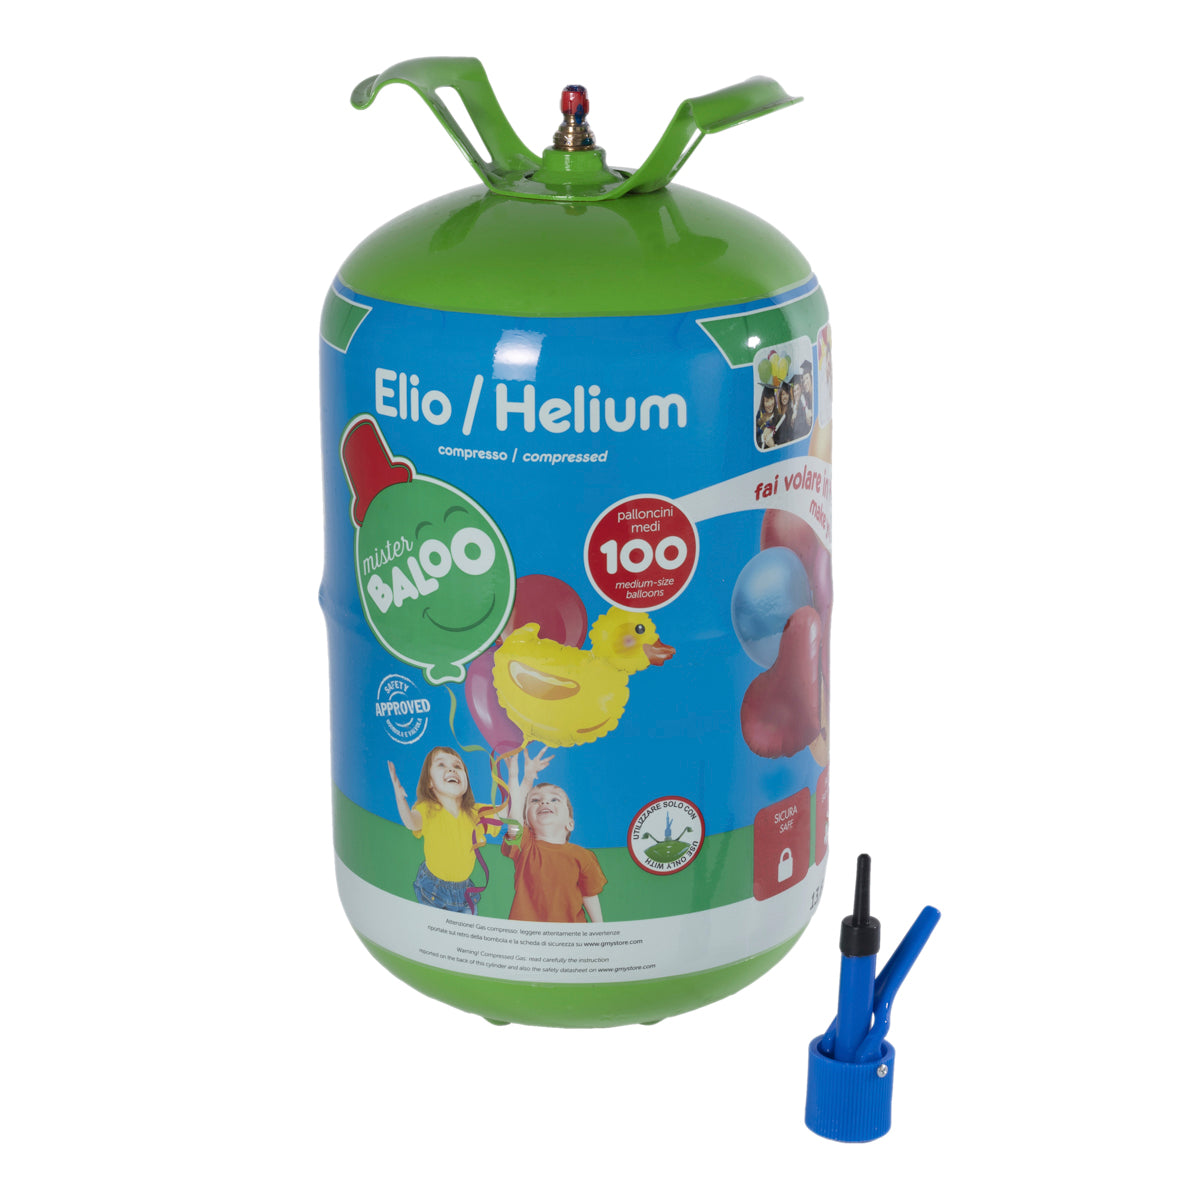 Mister Baloo bombola elio usa e getta per 100 palloncini inclusi